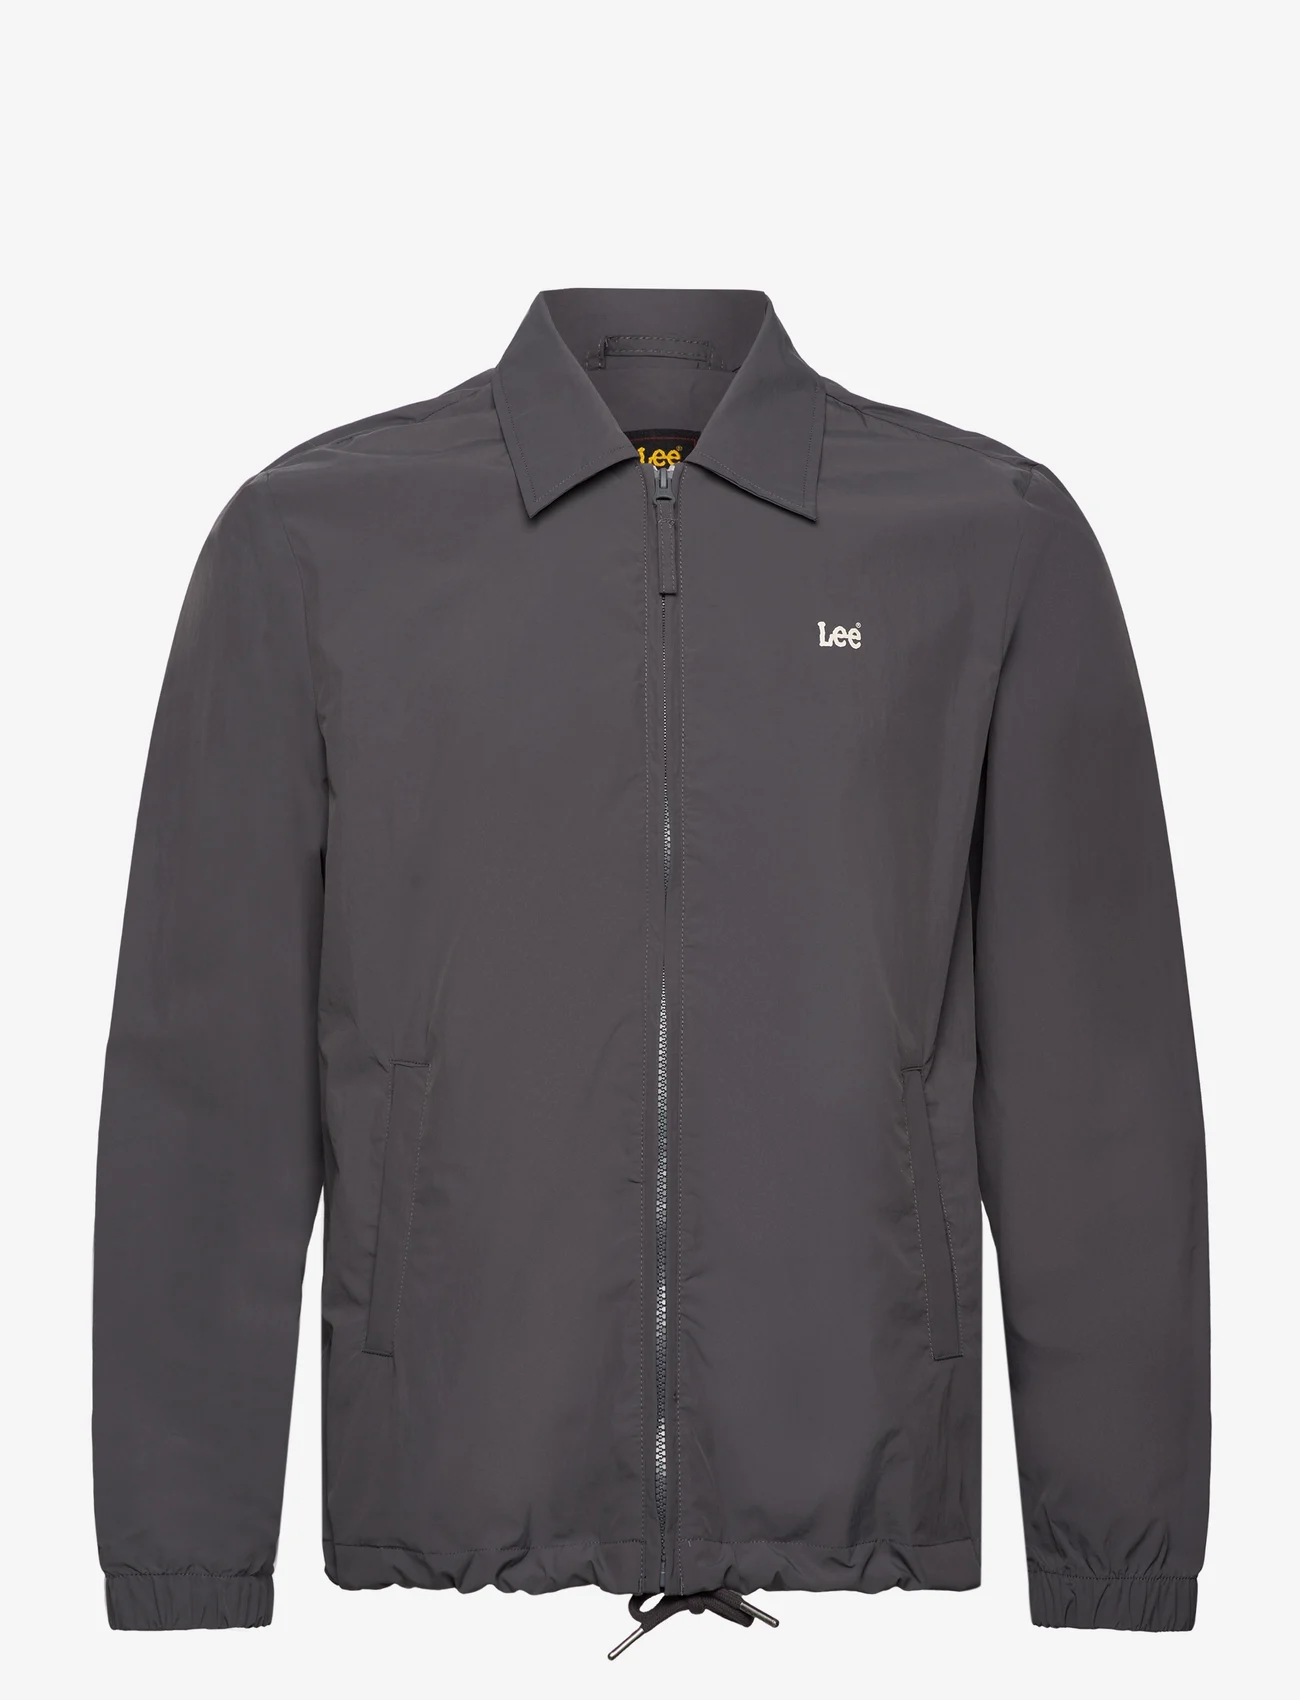 Lee Jeans - JACKET - spring jackets - washed black - 0